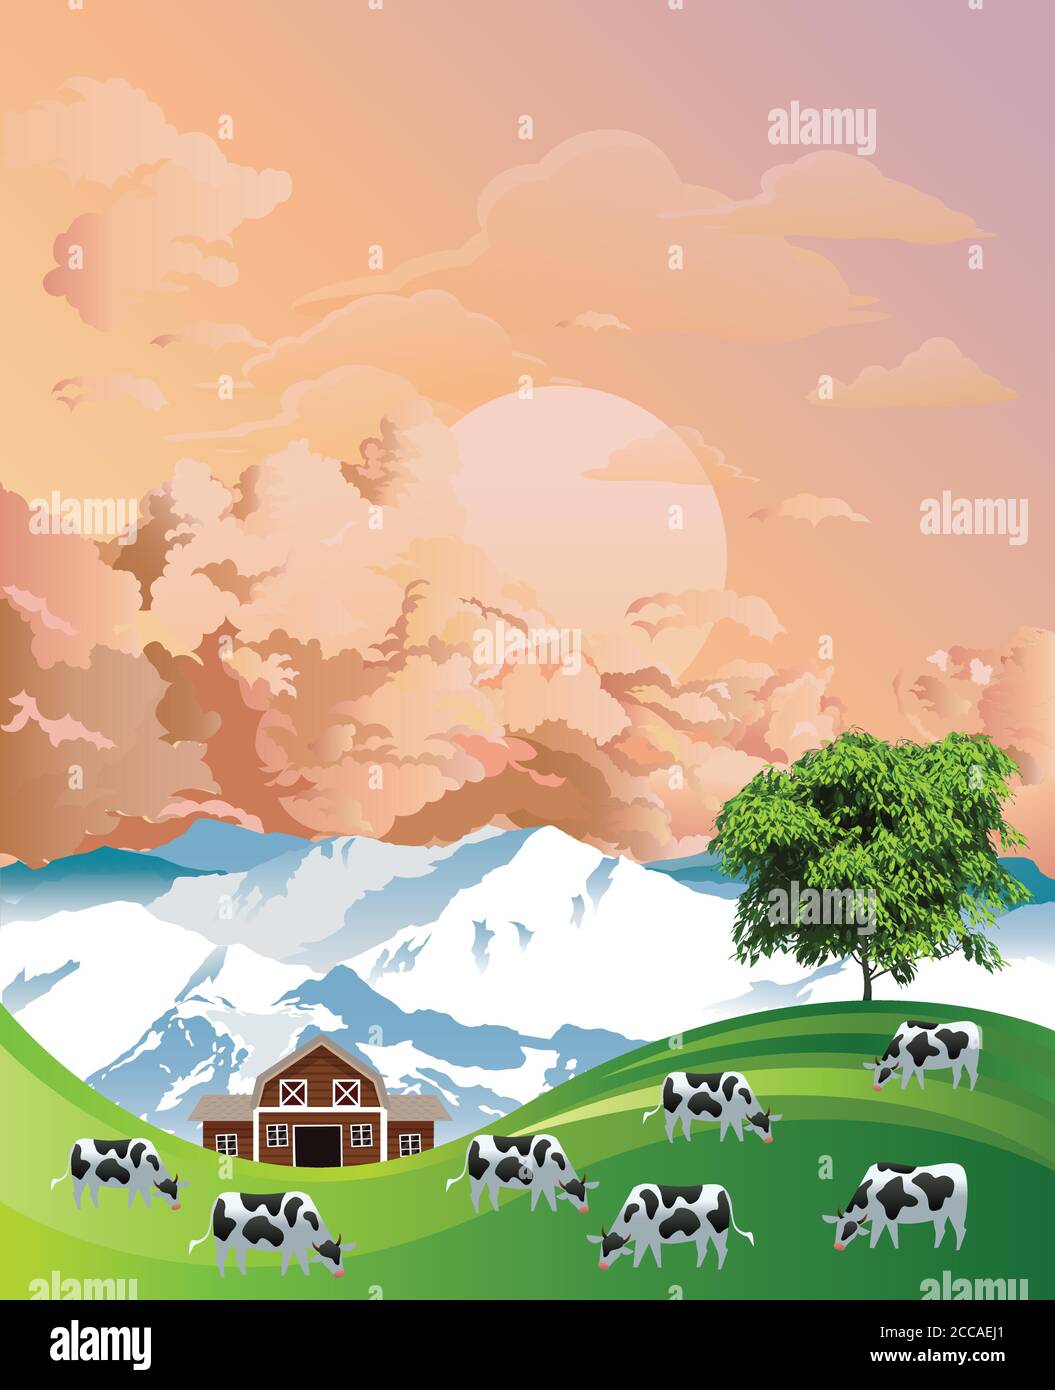 Pintoresca escena rural con una manada de vacas pastando pastos montañosos de verano en las tierras bajas contra el amanecer o el atardecer cielo Ilustración del Vector